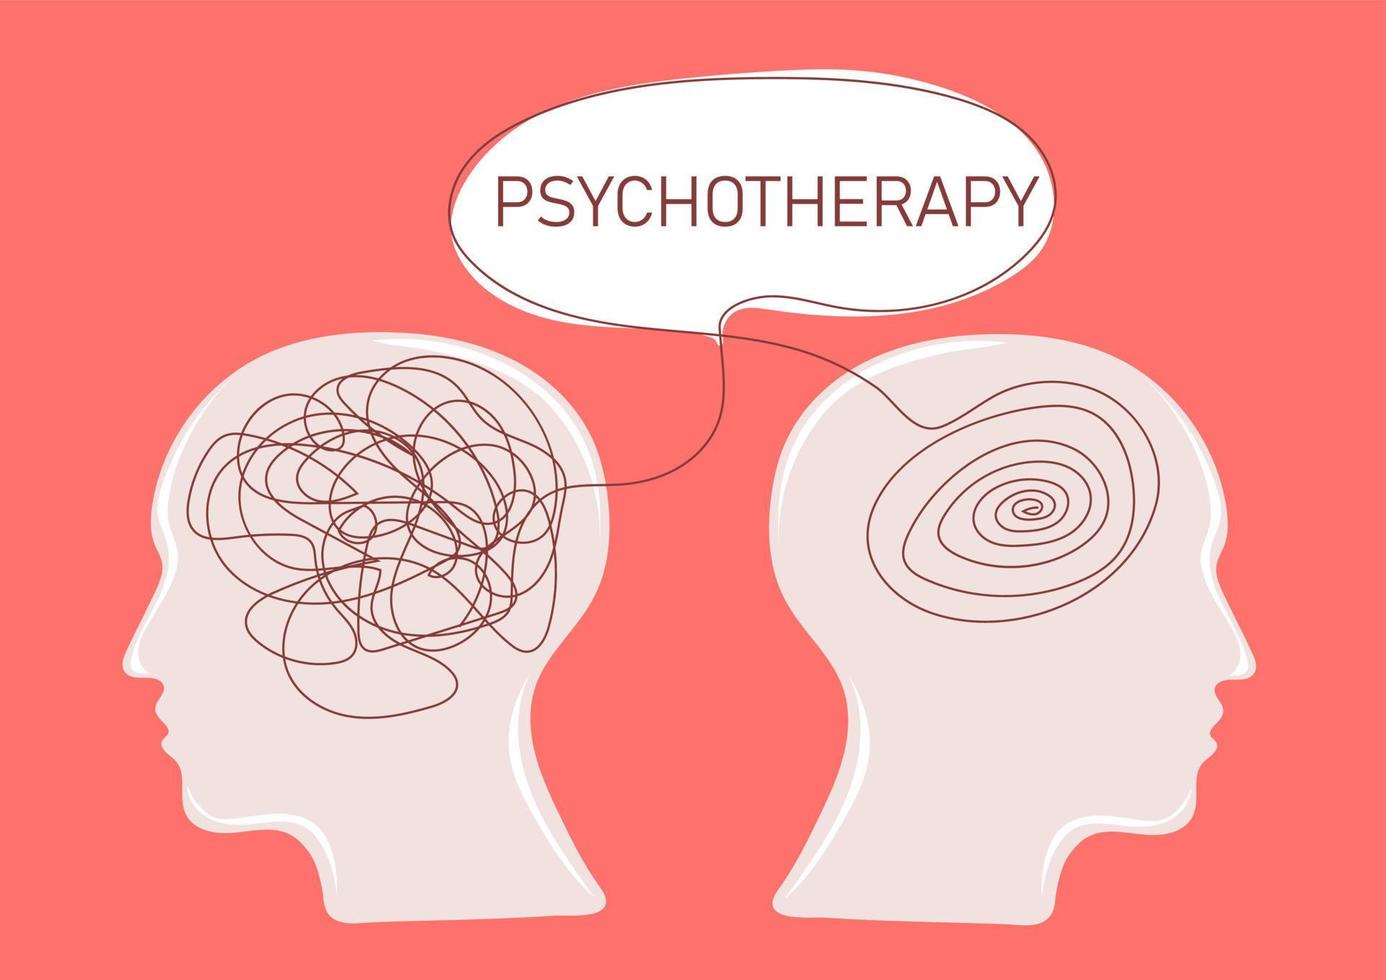 dois humano cabeças silhueta com cérebro mental saúde psicopata terapia conceito vetor